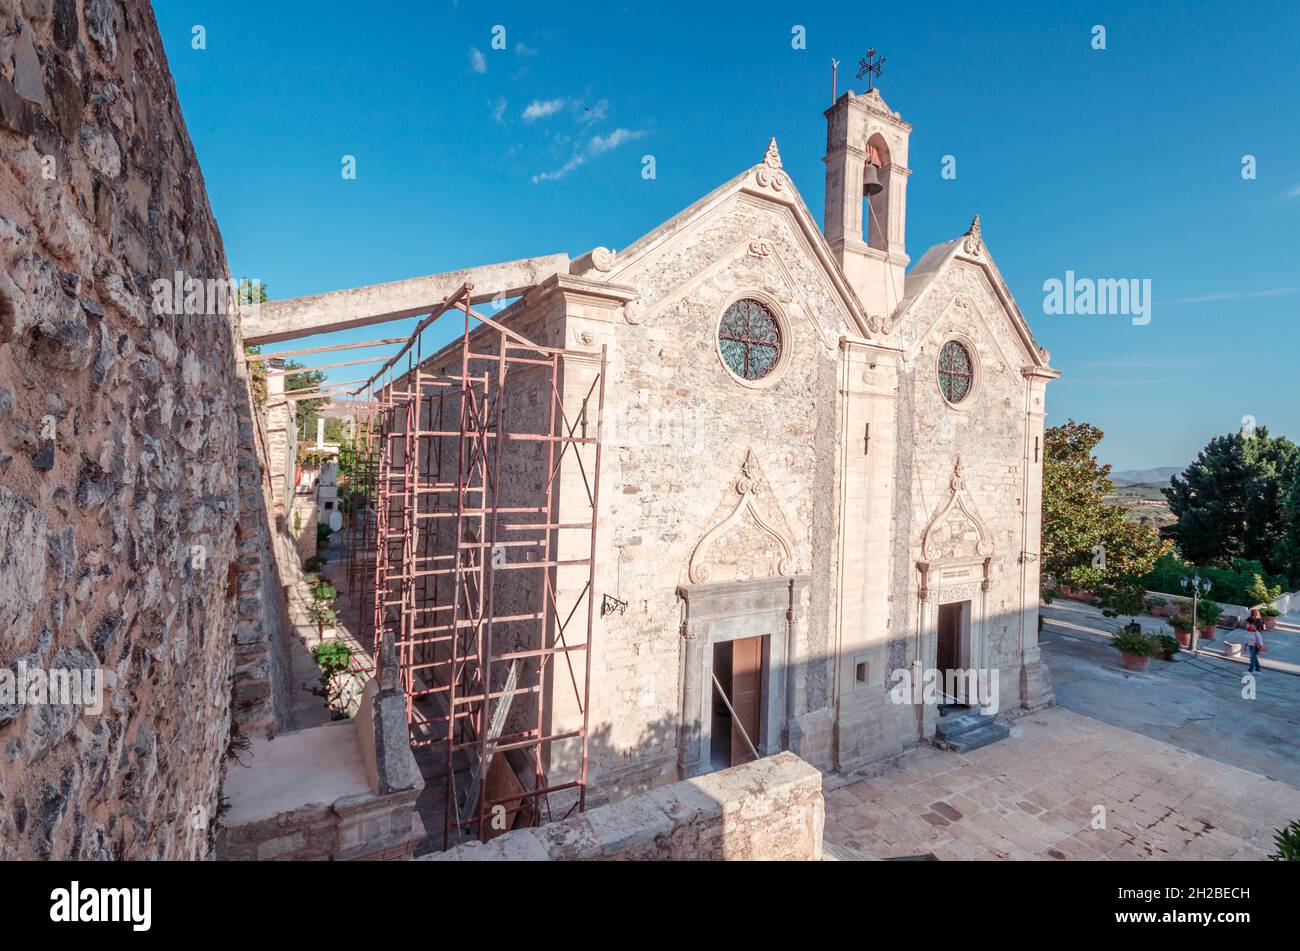 Kloster von Agios Georgios [St. George] Apanosifis oder ‘Epanosifis’ ist eines der bevölkerungsreichsten und berühmtesten Klöster Kretas. Stockfoto